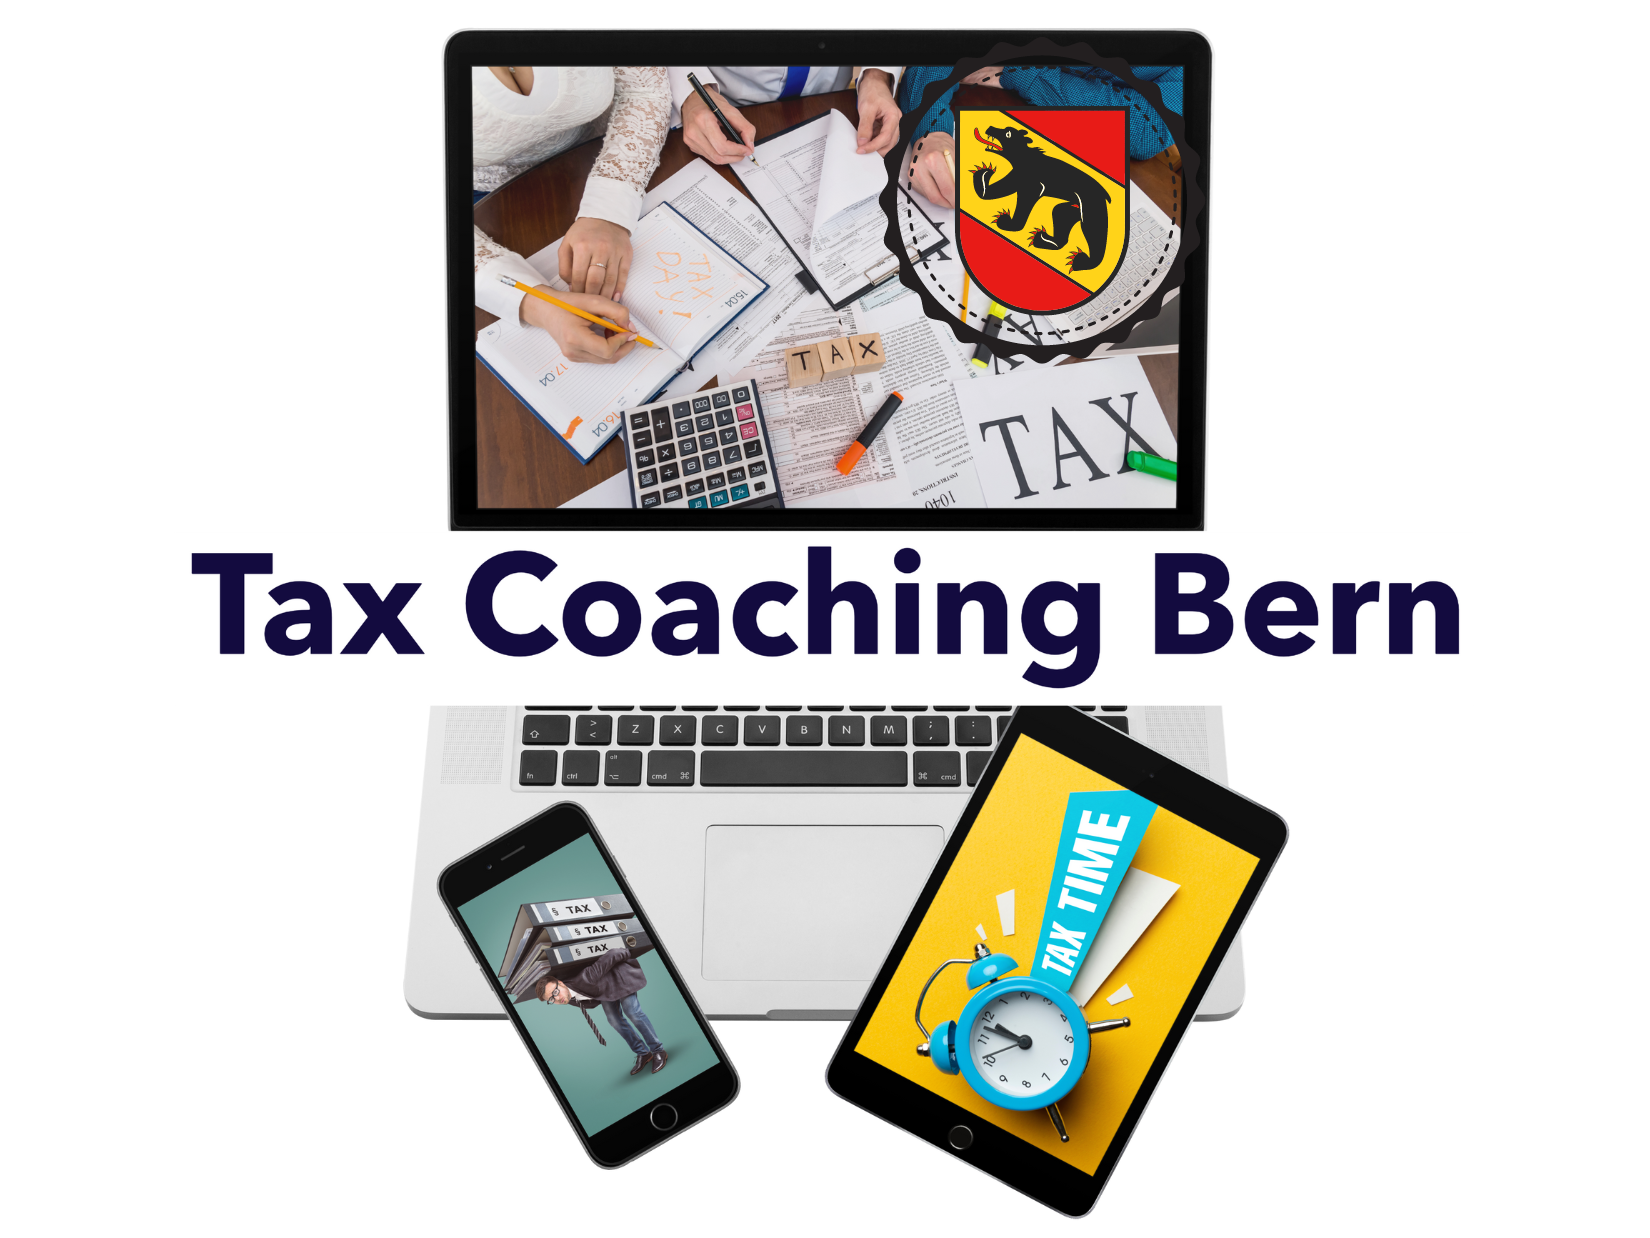 Steuererklärung ausfüllen mit Tax Coaching Bern